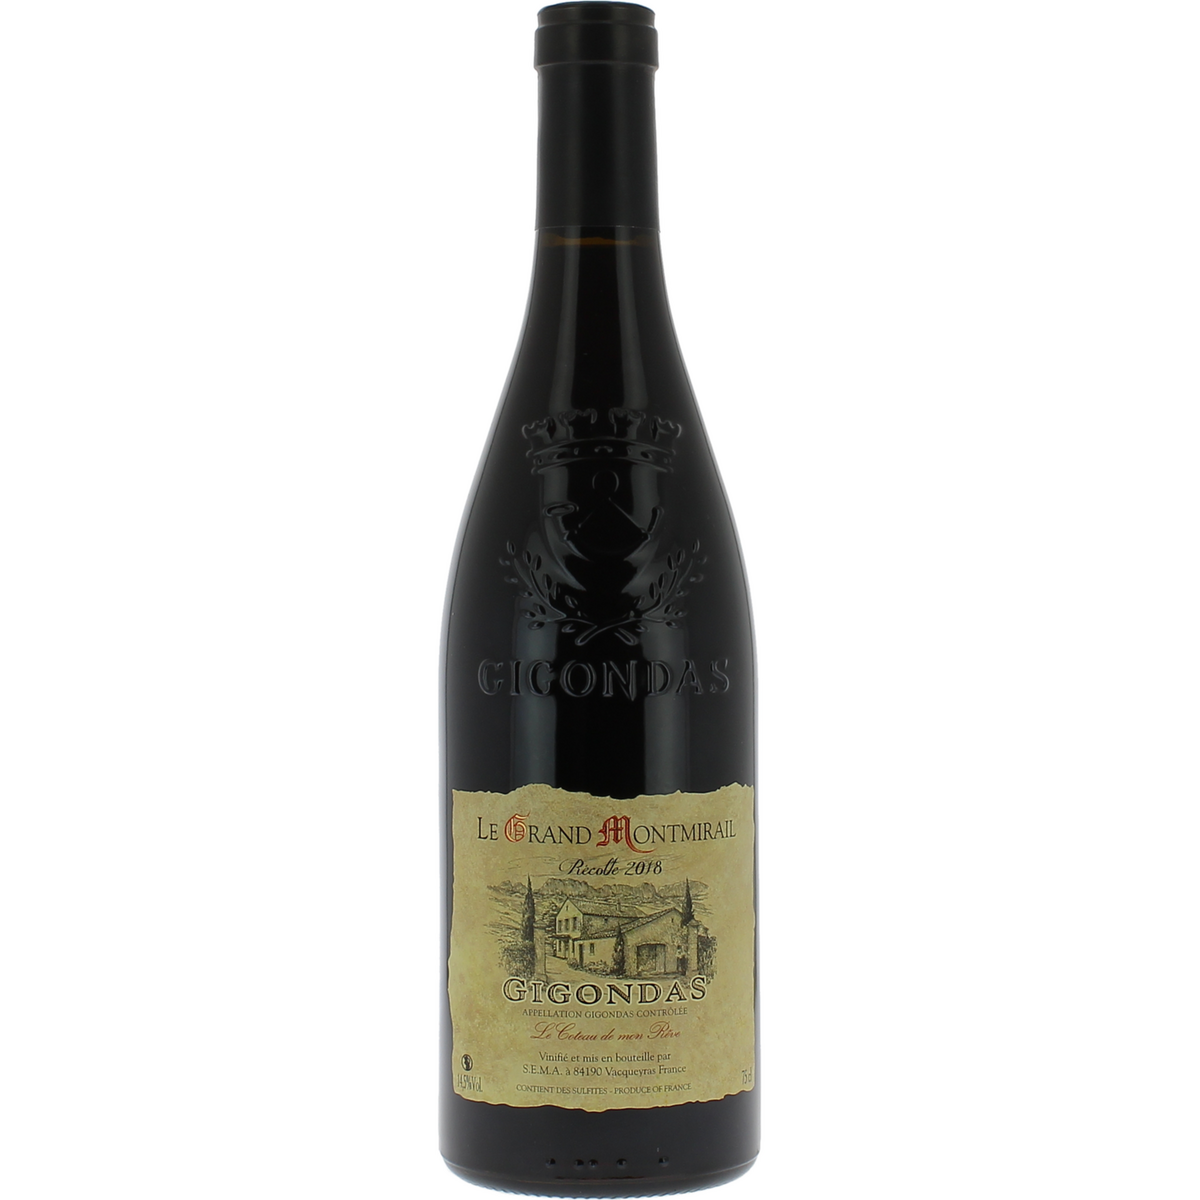 Vin rouge AOP Gigondas Le Grand Montmirail Le Coteau de Mon Rêve 2018 75cl